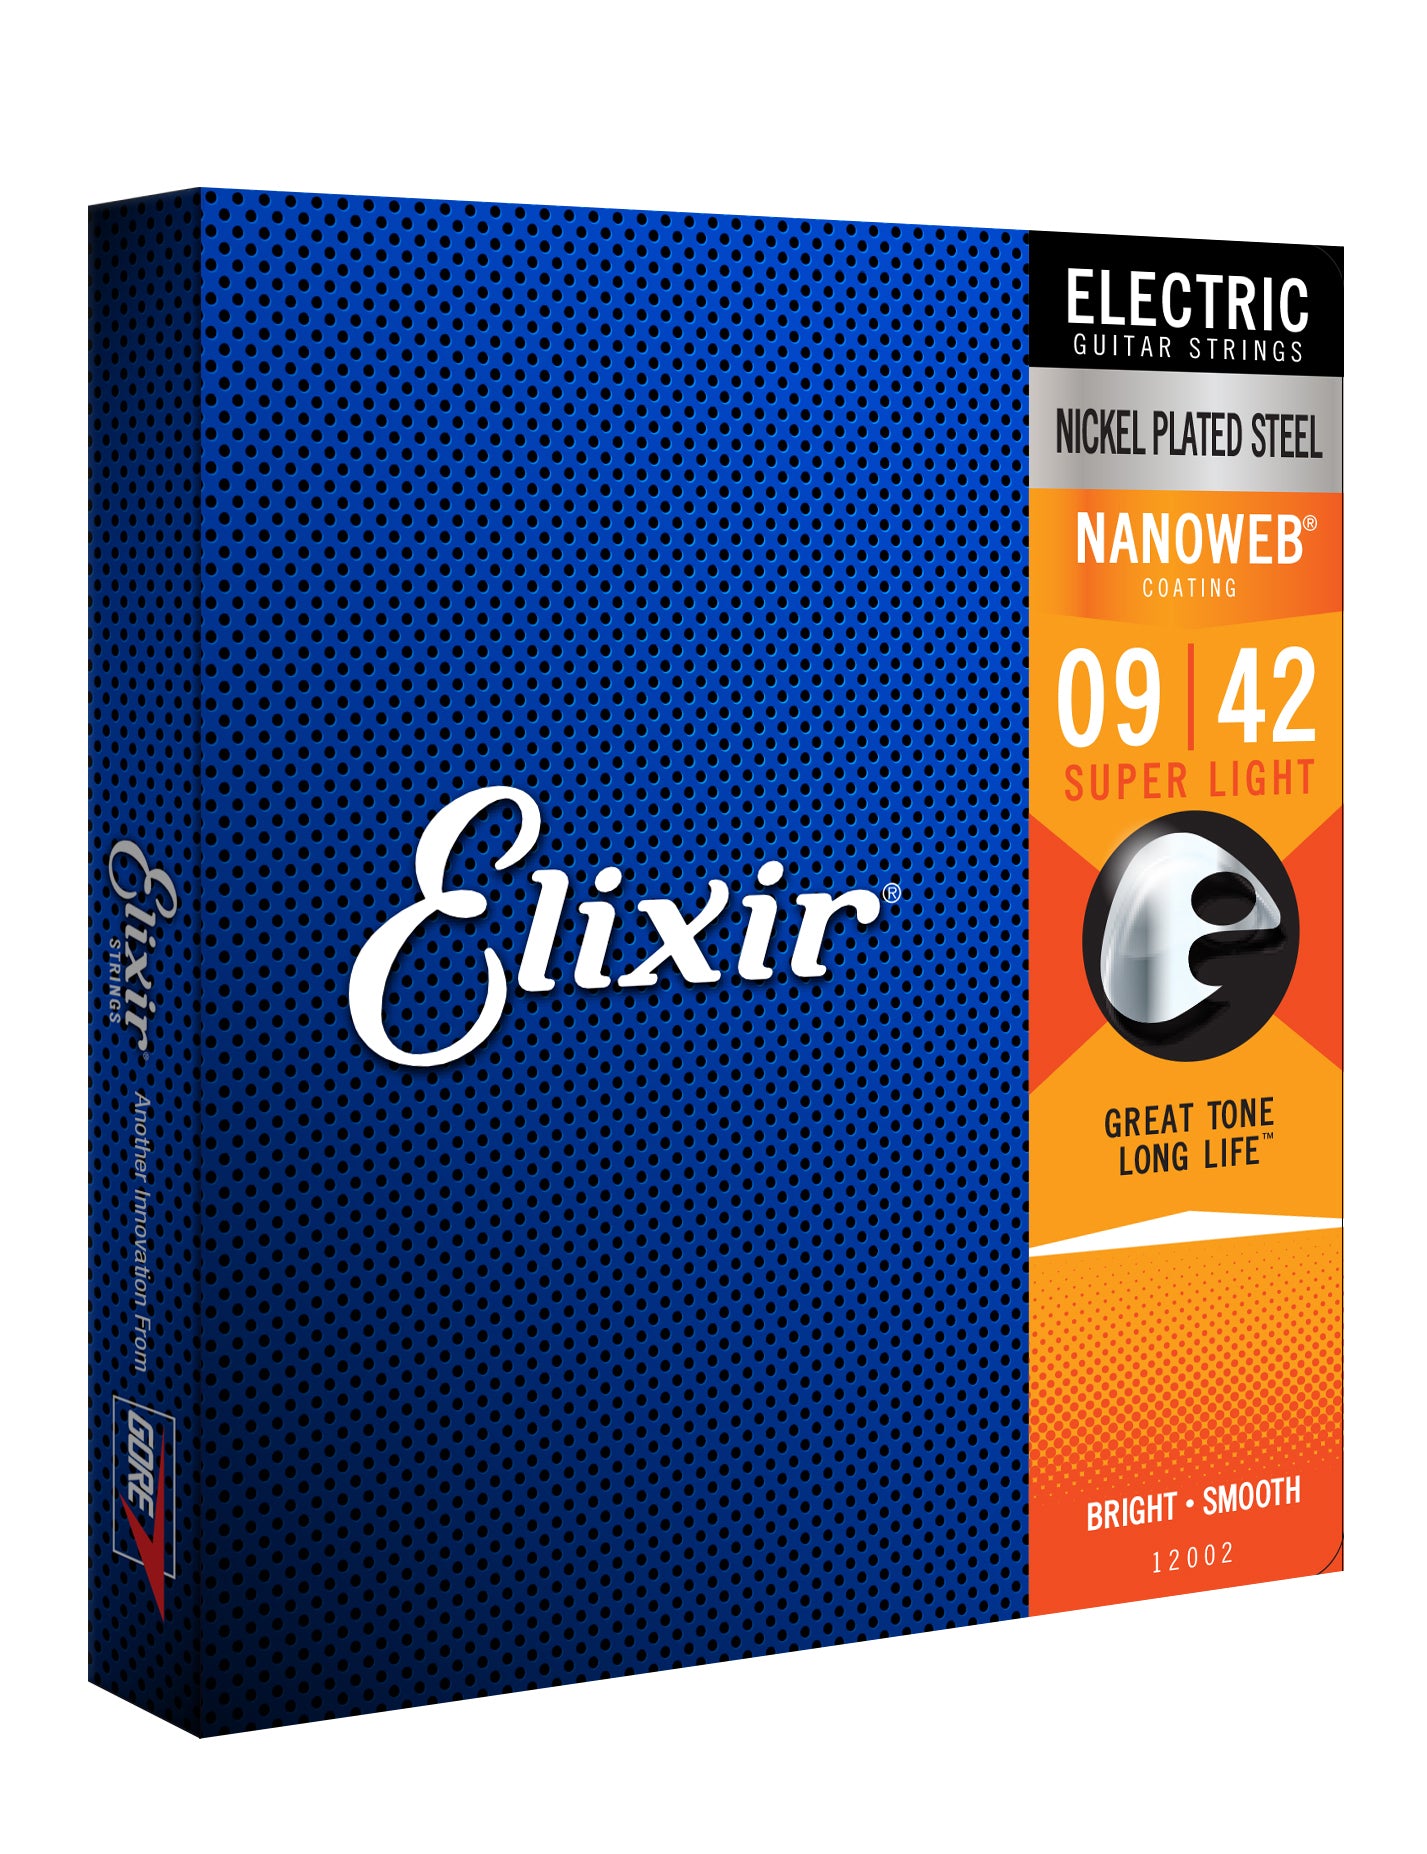 Elixir 12002 Nanoweb Elec. Guitar Strings 9-42 Super Light Nickel Plated Steel